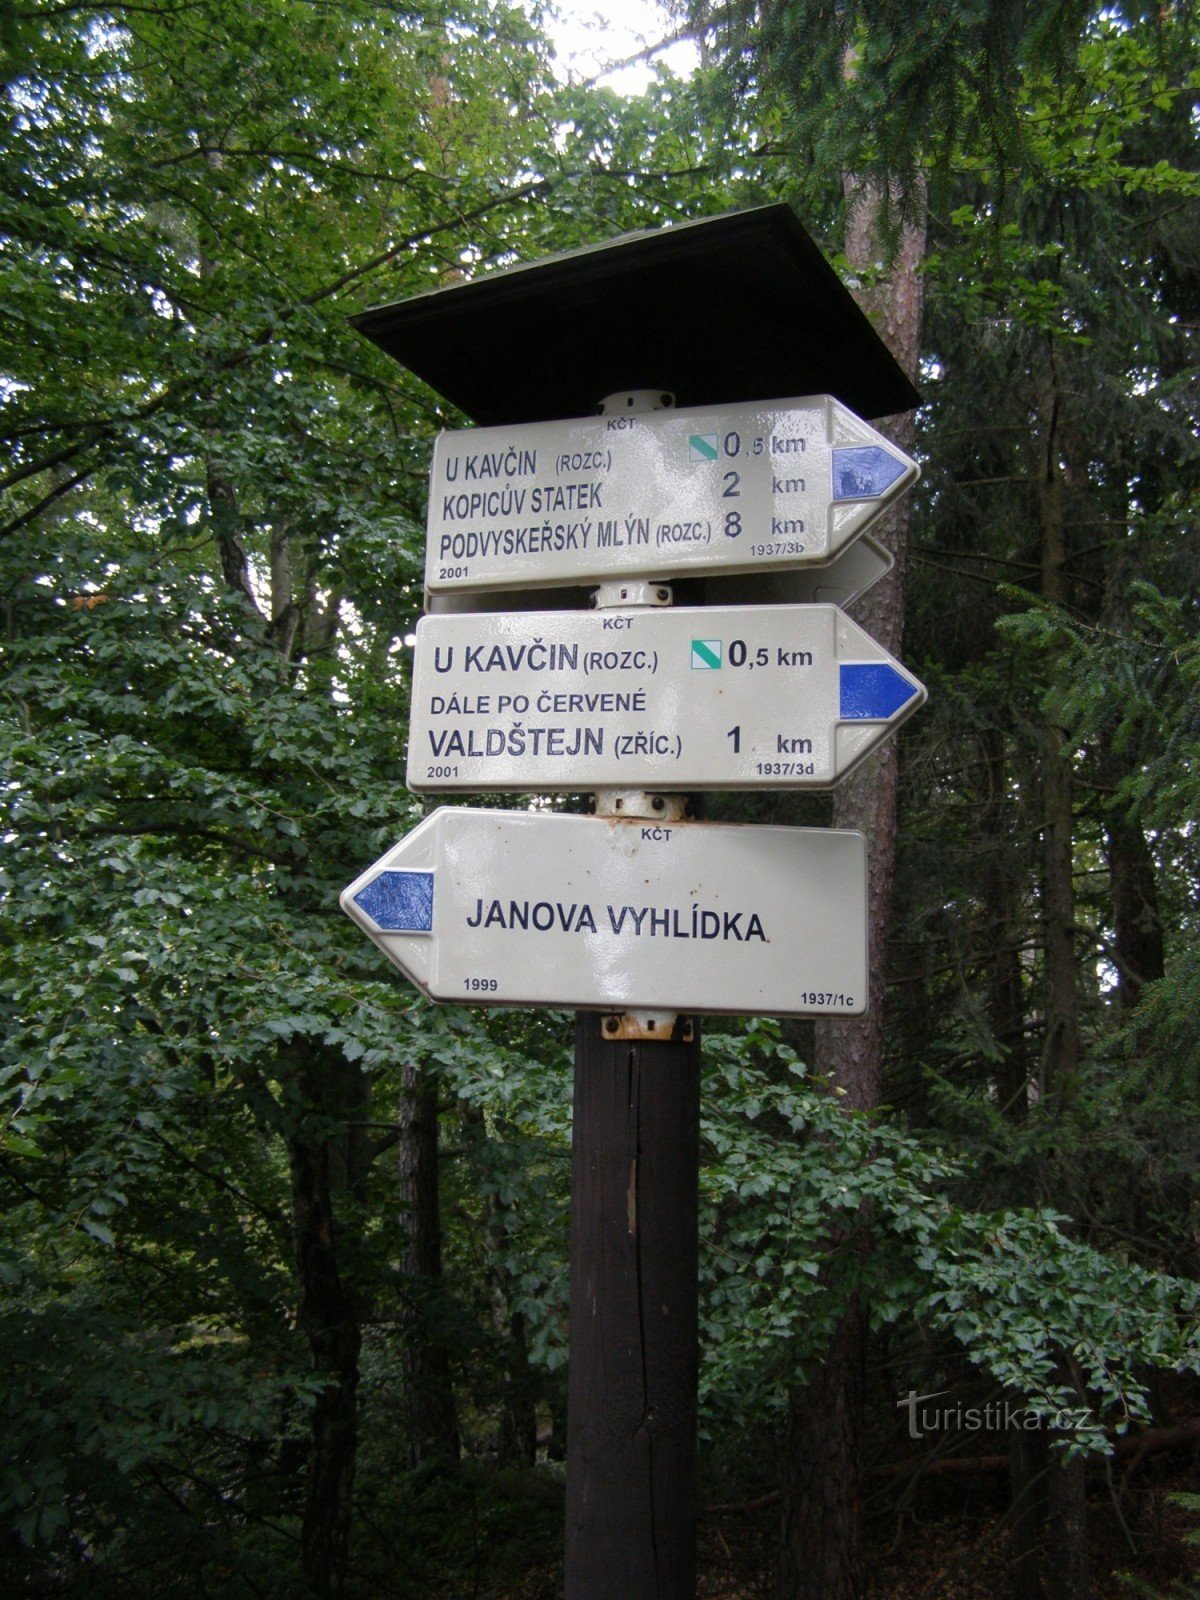 răscruce turistică de la punctul de belvedere Janova